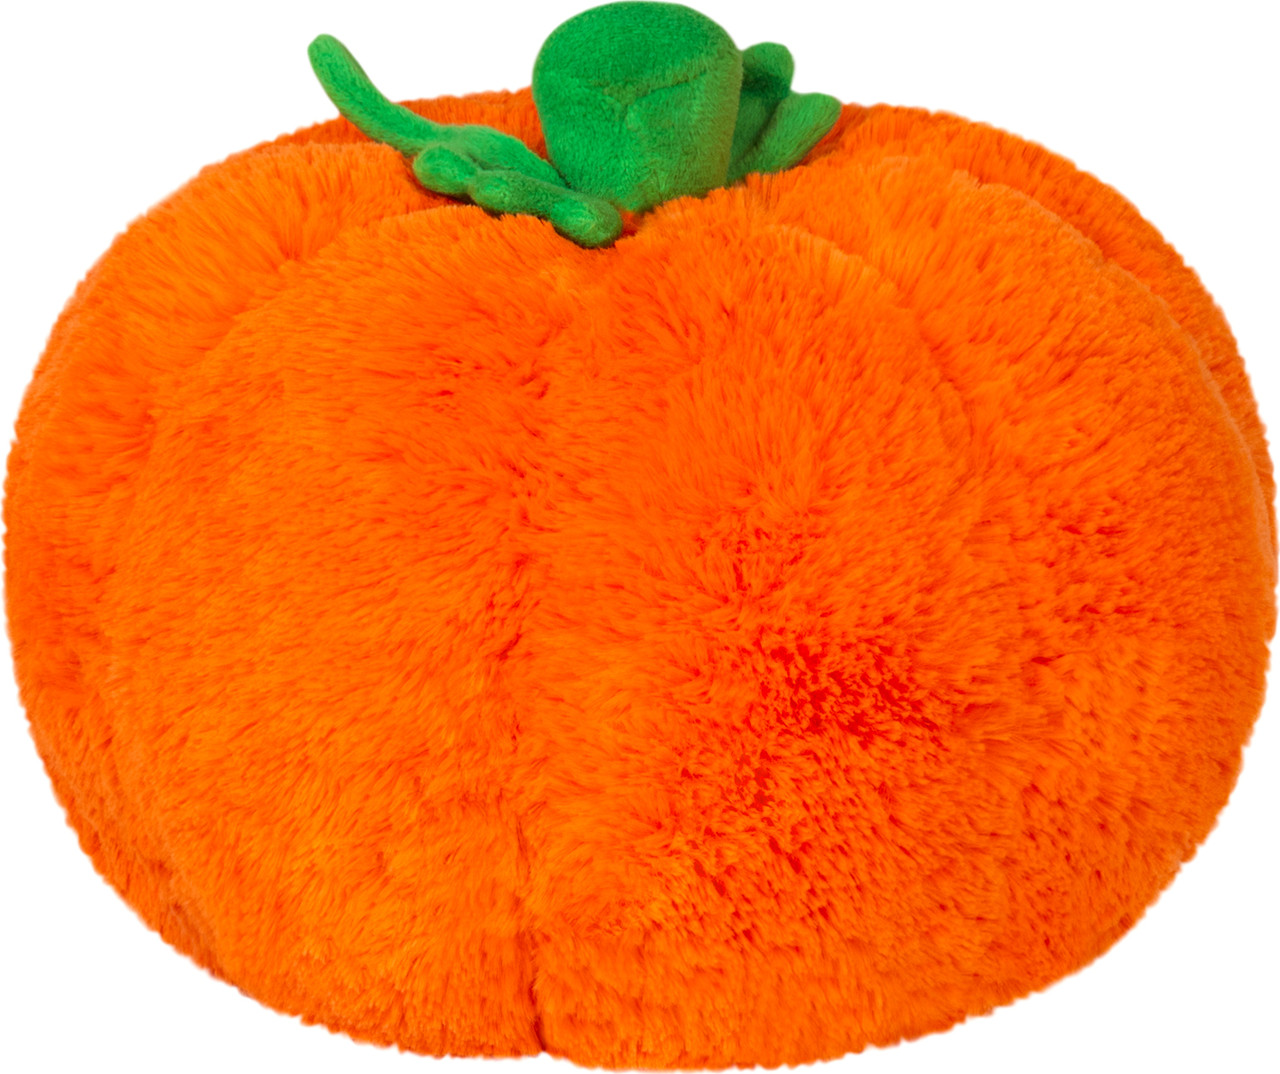 Mini Squishable Pumpkin 4